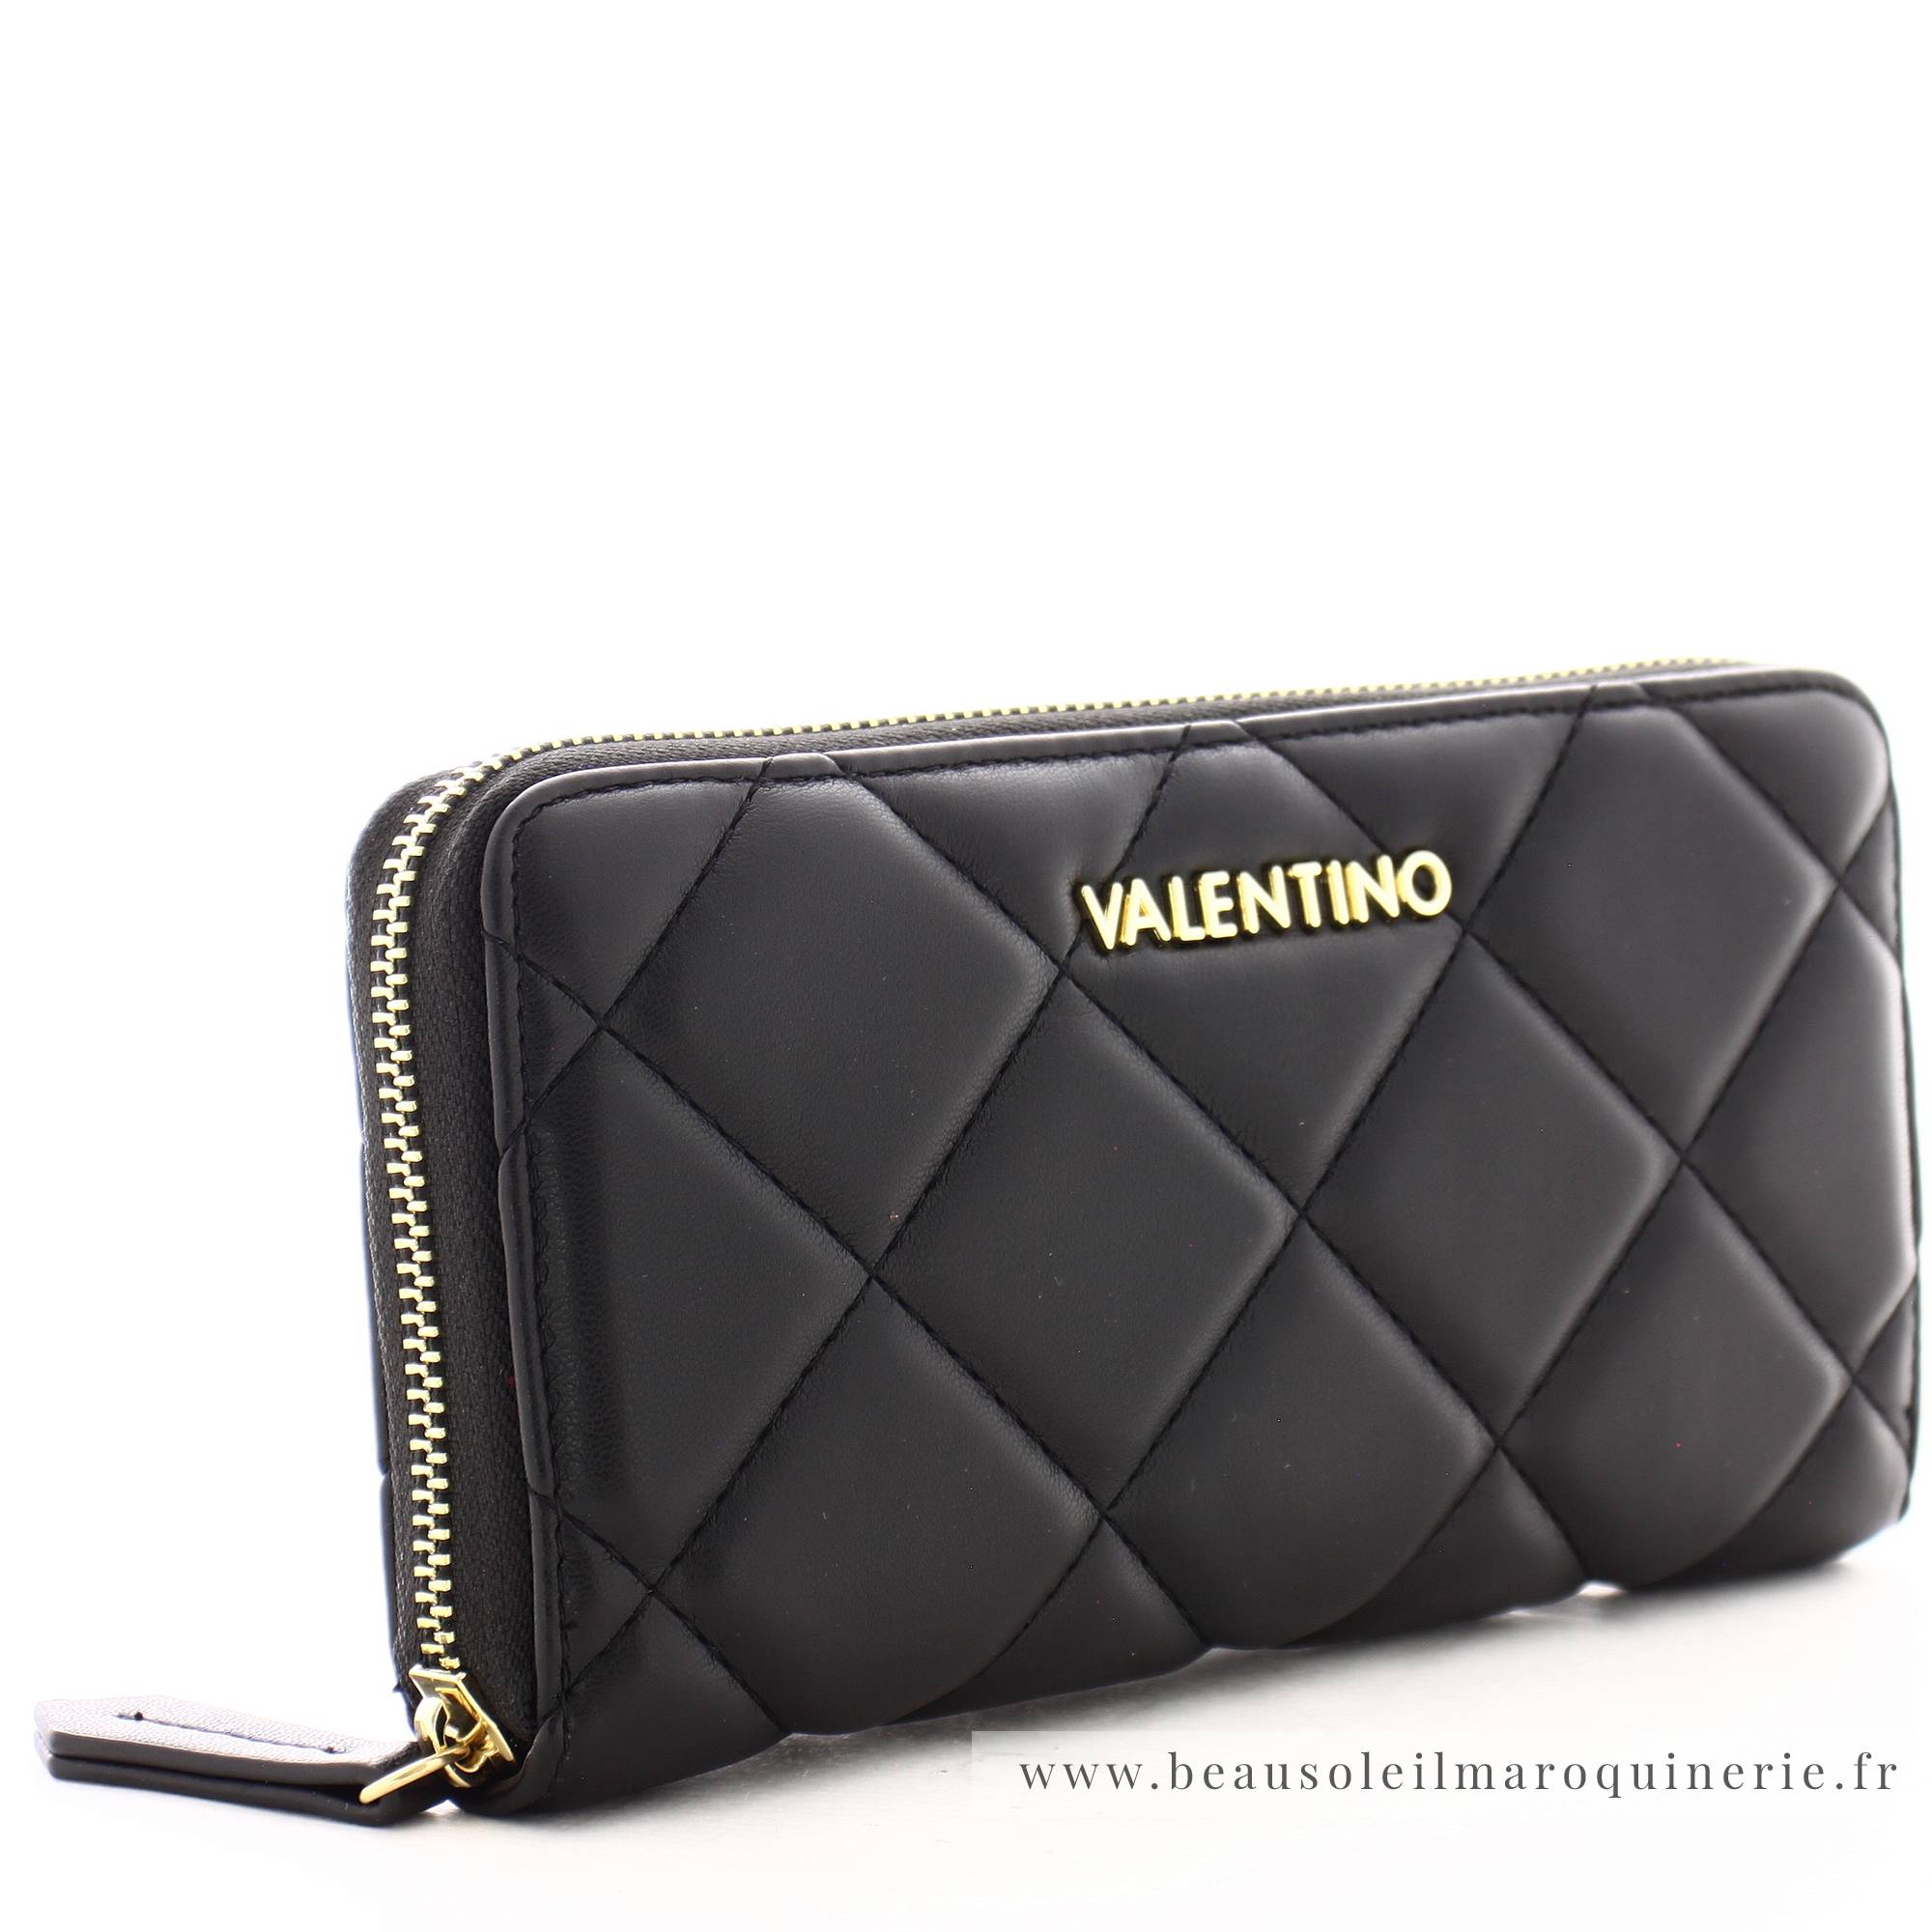 Grand portefeuille zippé effet matelassé Valentino VPS3KK155 couleur noir vue de profil